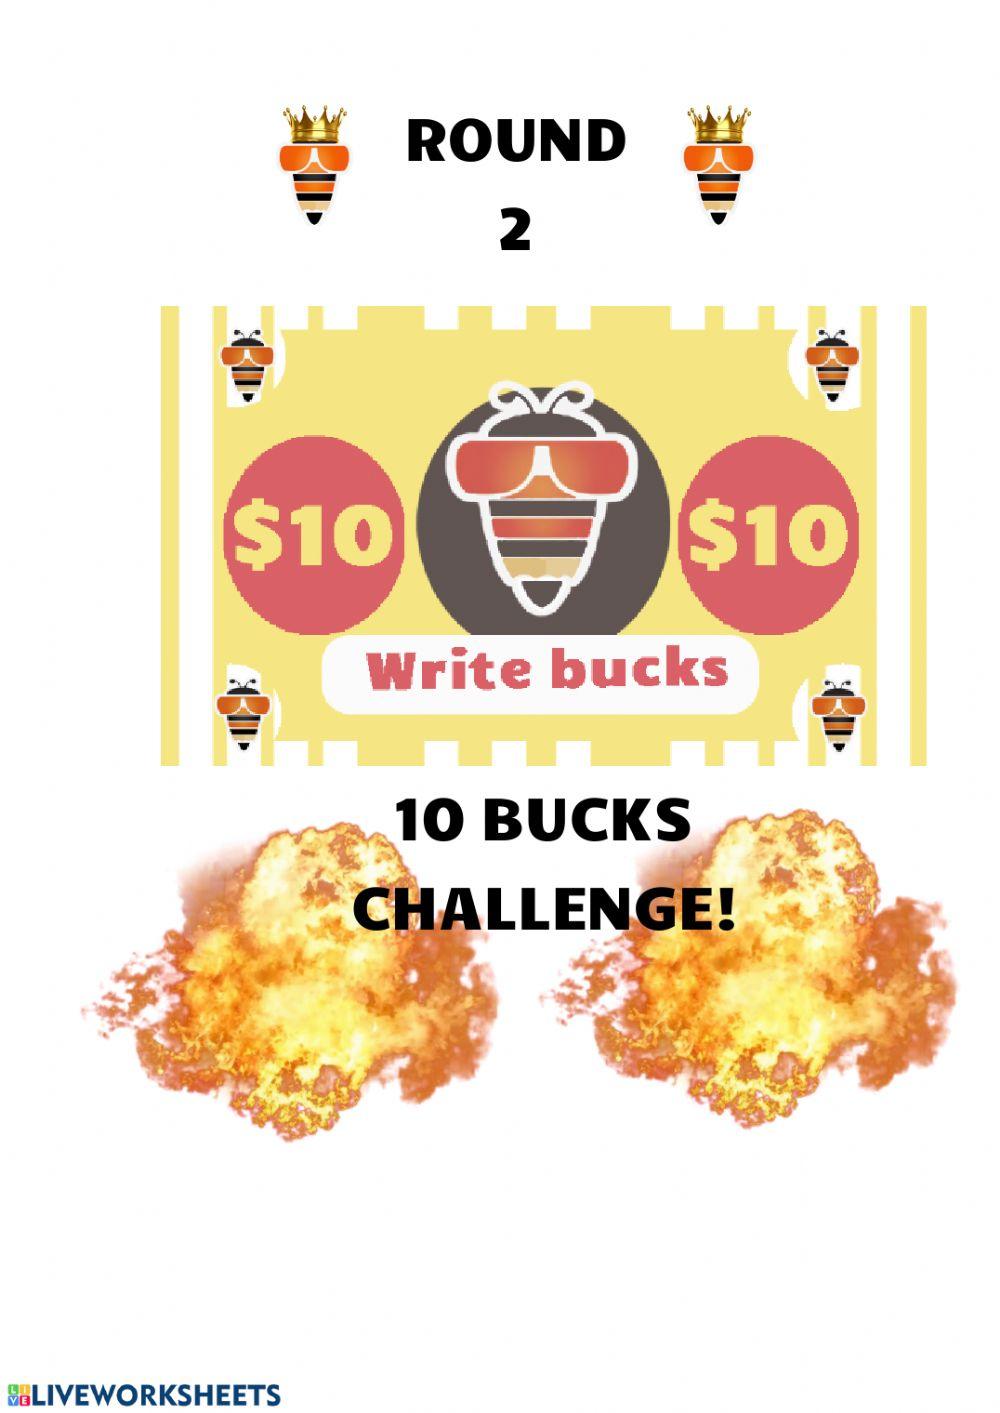 10 bucks challenge round 2